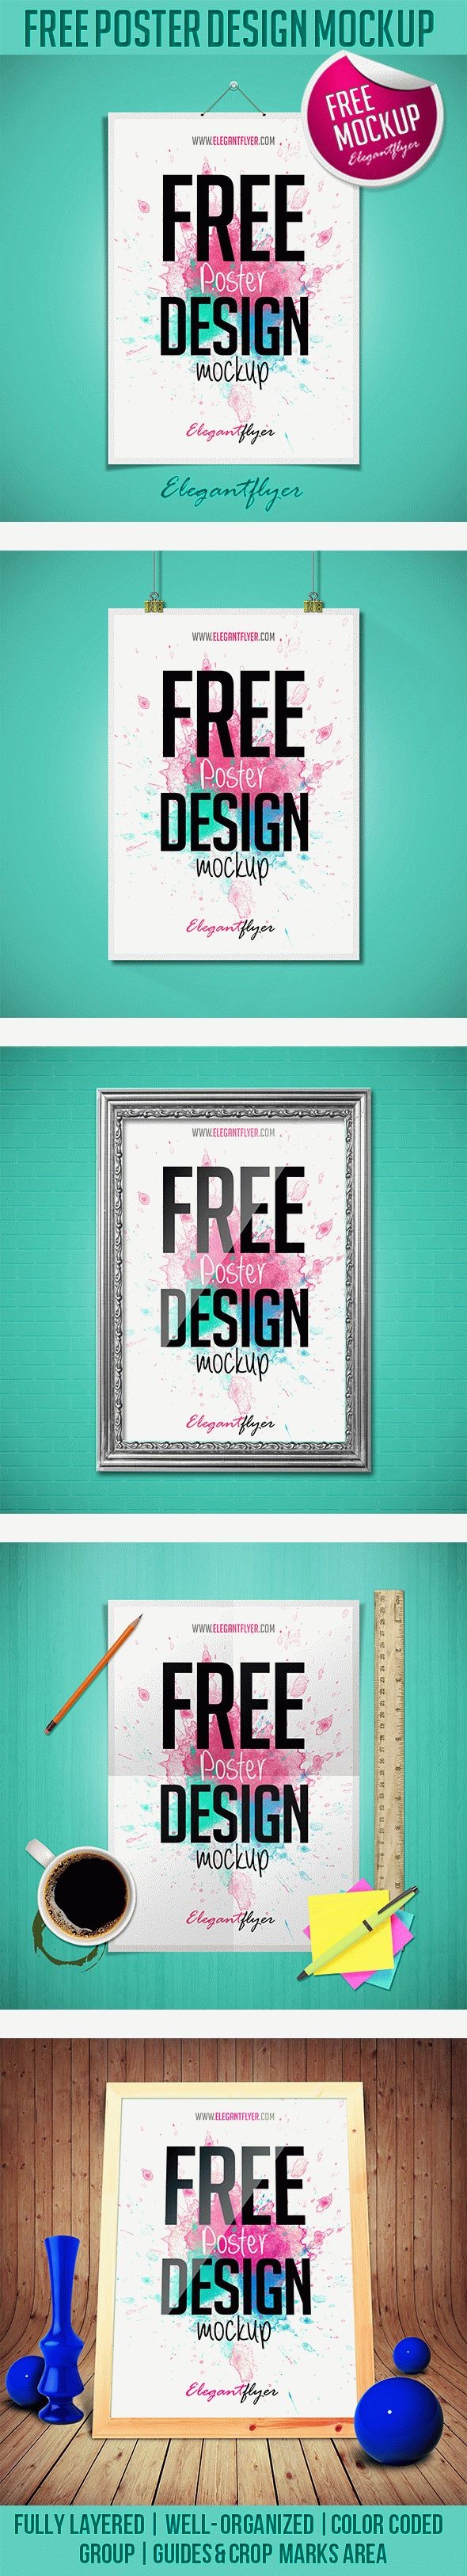 Maquette de design d'affiche gratuite. by ElegantFlyer